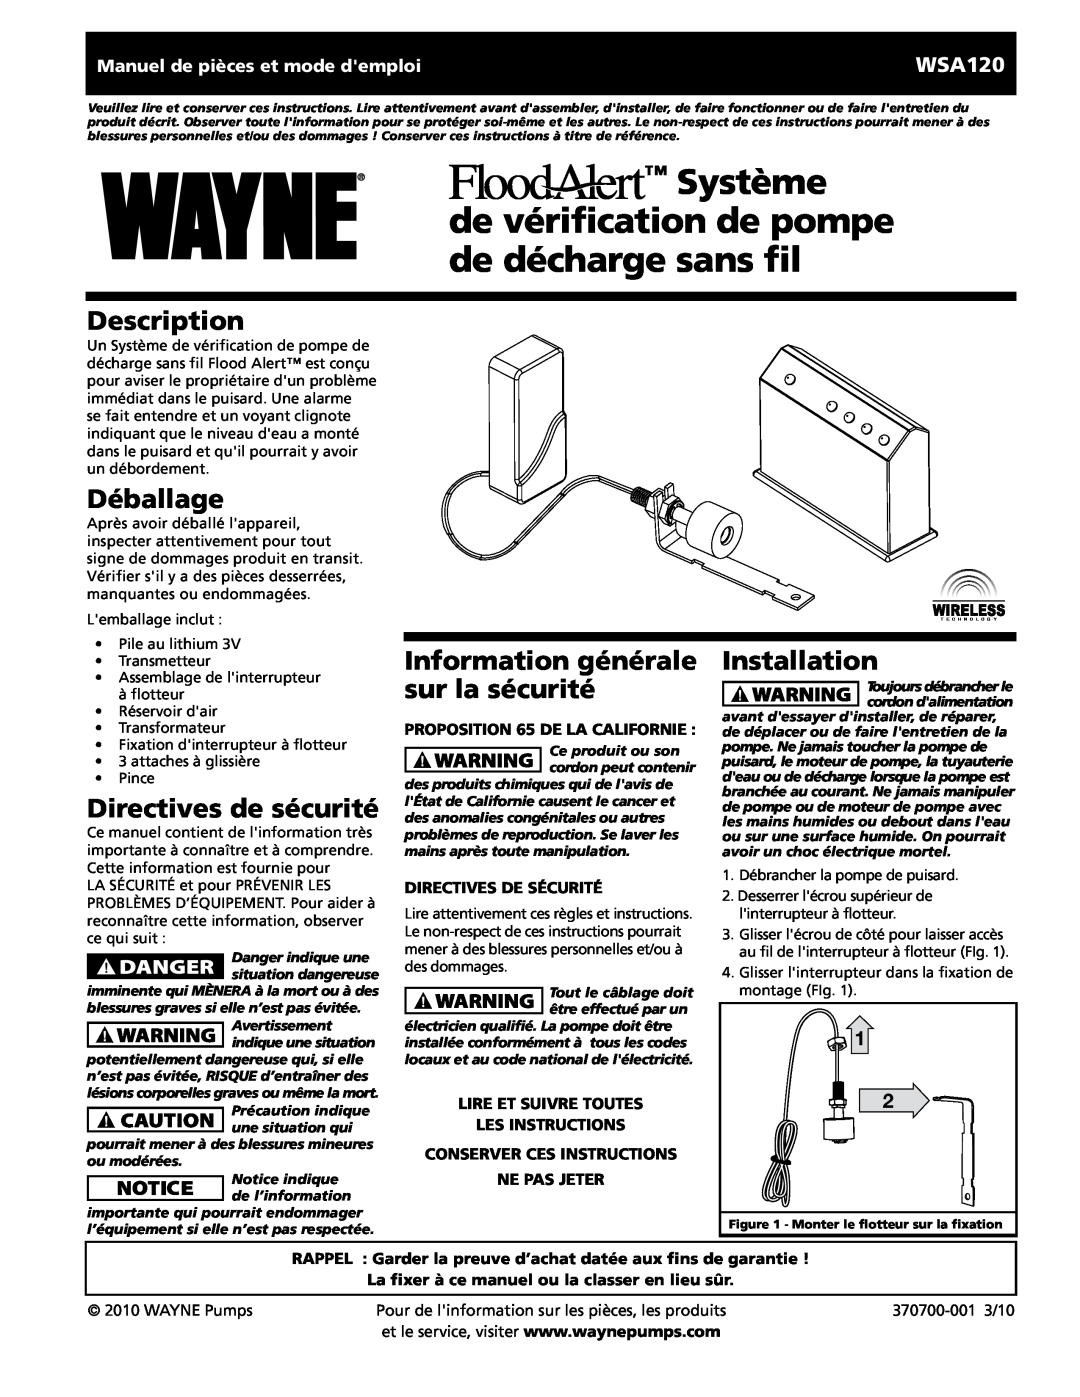 Wayne 370700-001 Système, de vérification de pompe de décharge sans fil, Déballage, Directives de sécurité, Description 